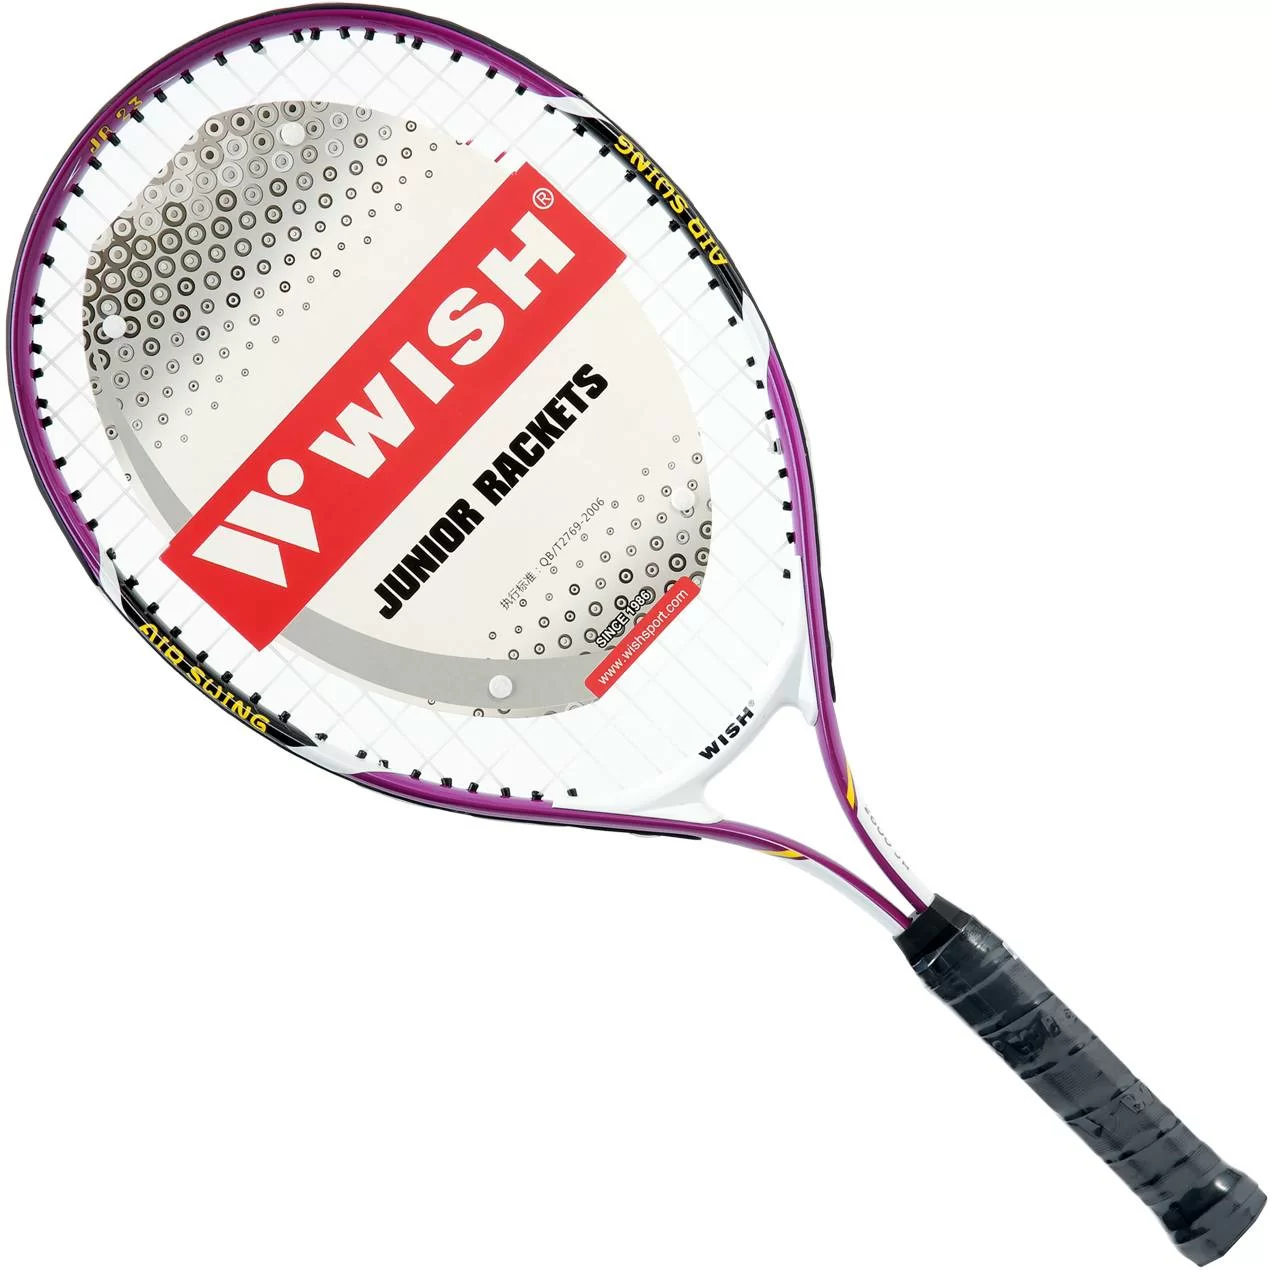 Реальное фото Ракетка для тенниса Wish 2500 чехол 3/4 от магазина СпортСЕ